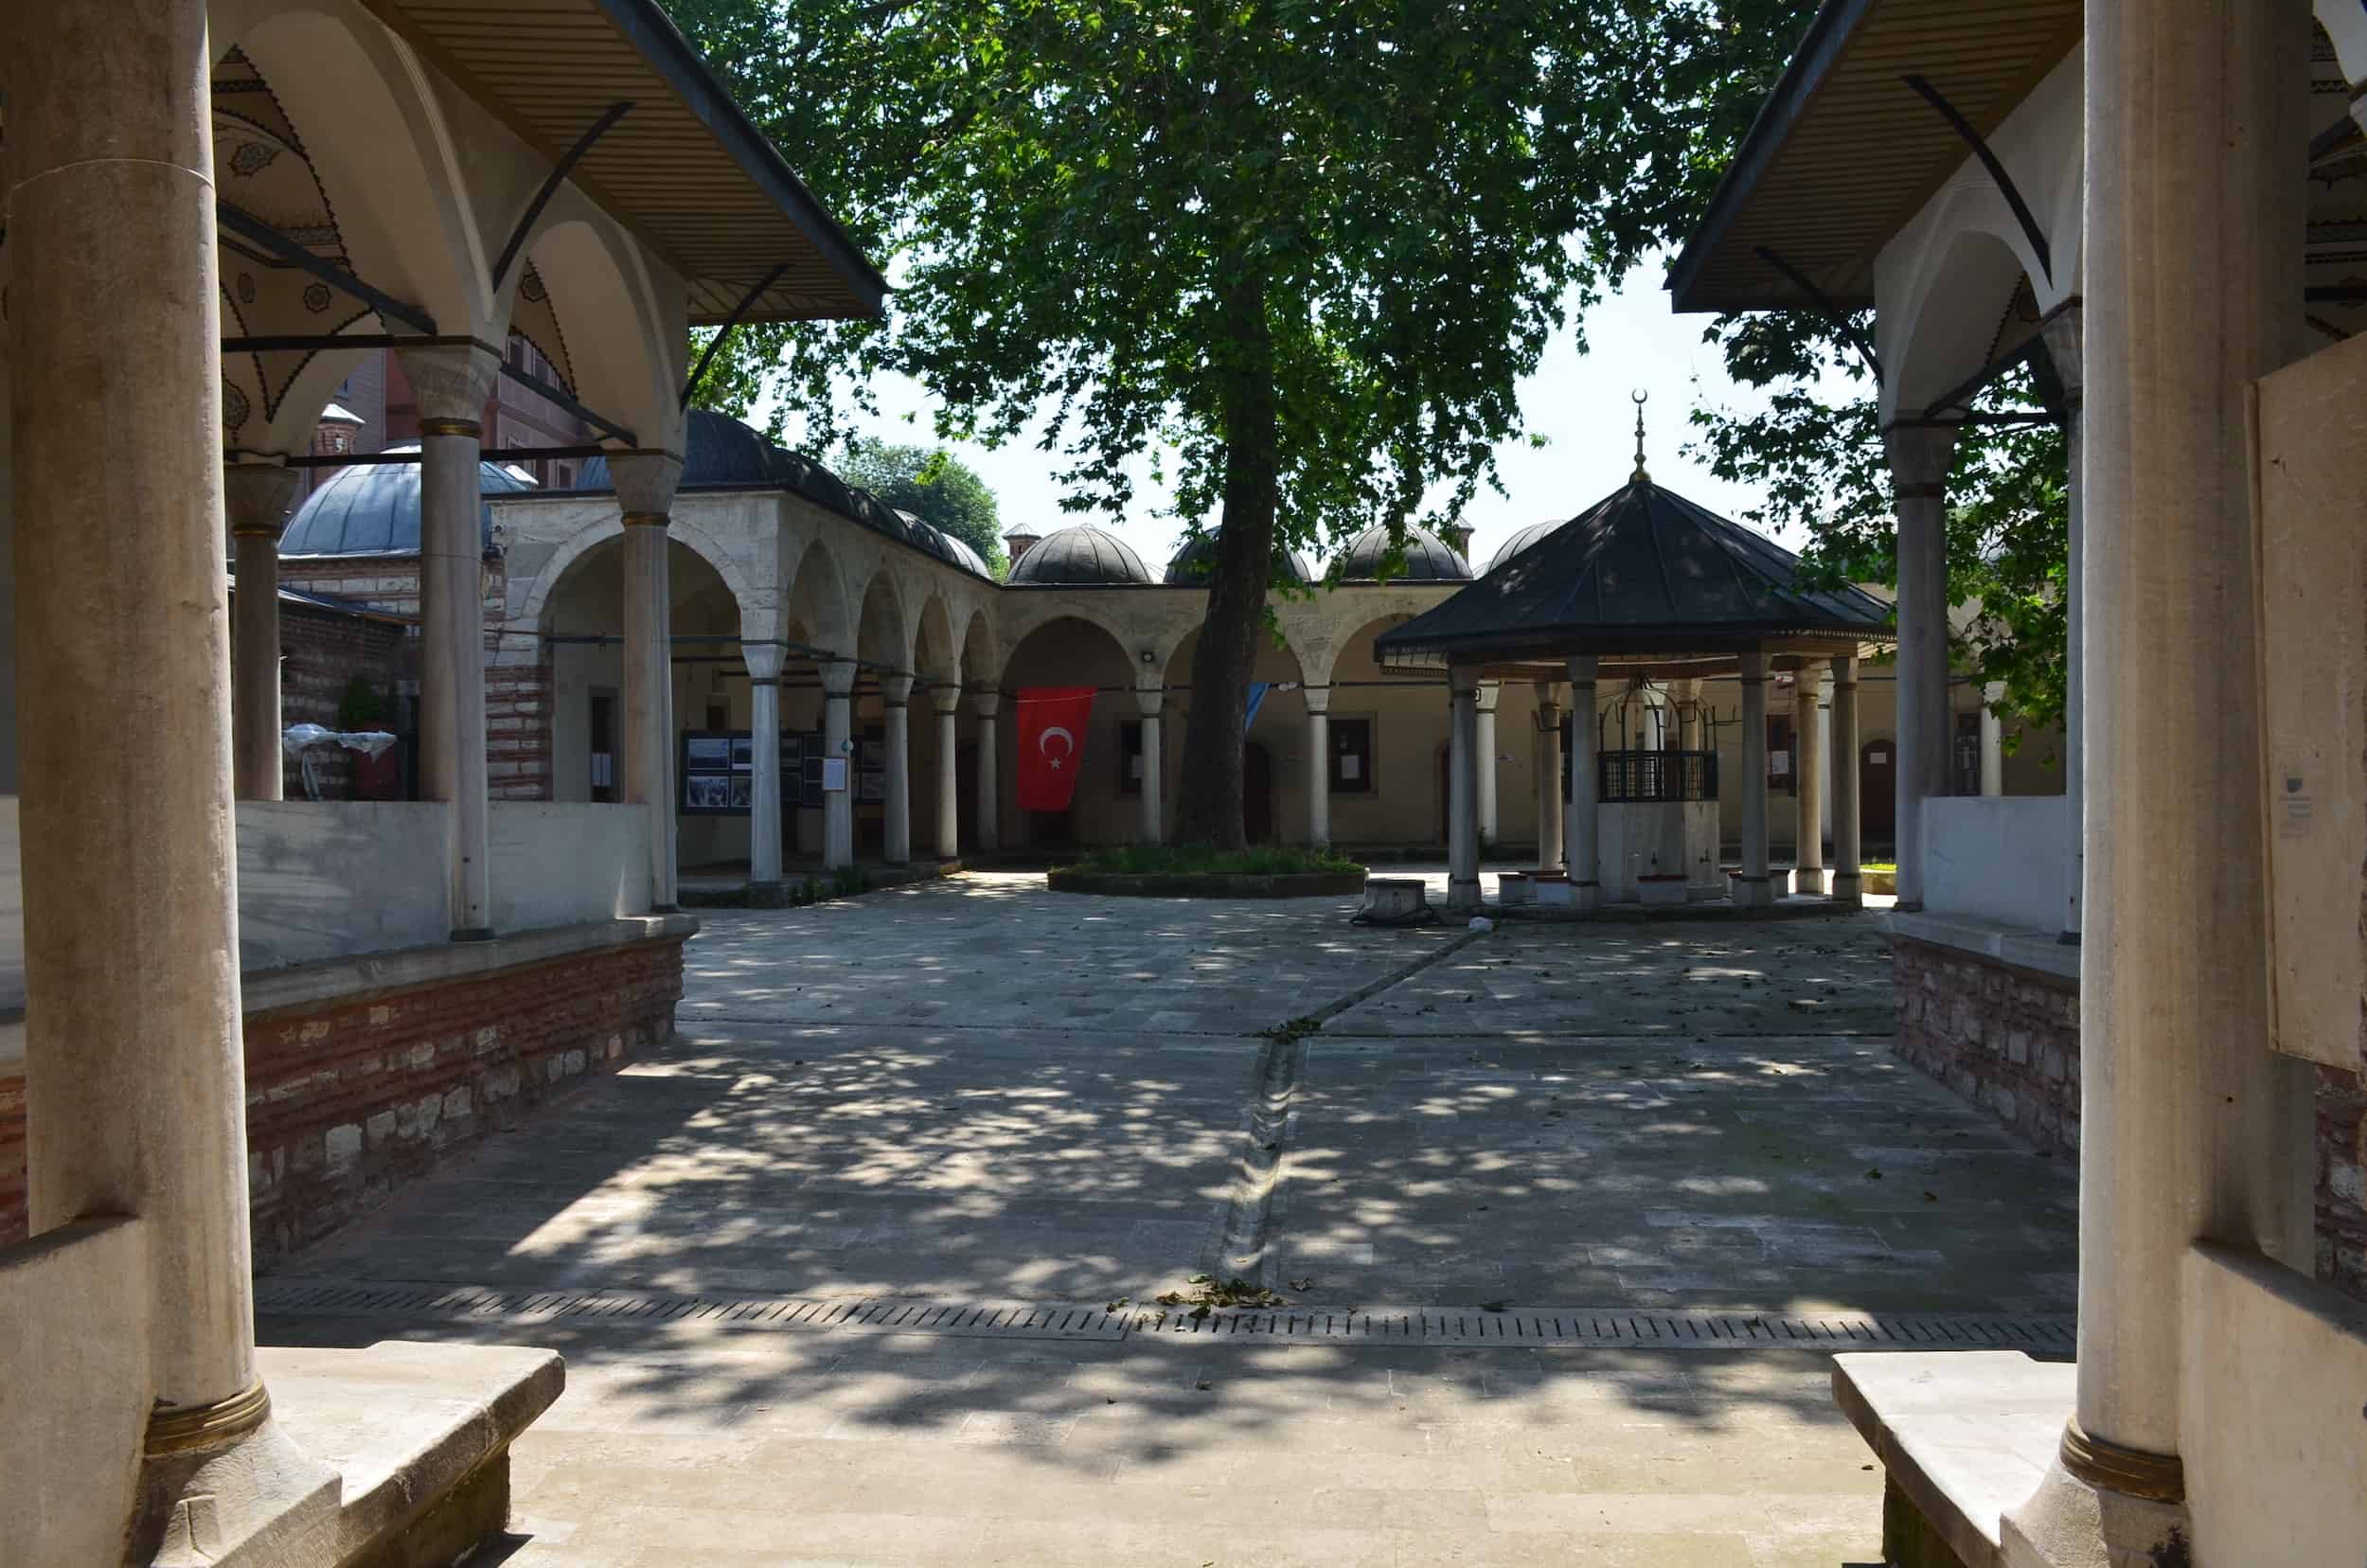 Courtyard of the Damat Ibrahim Pasha Complex in Şehzadebaşı, Istanbul, Turkey